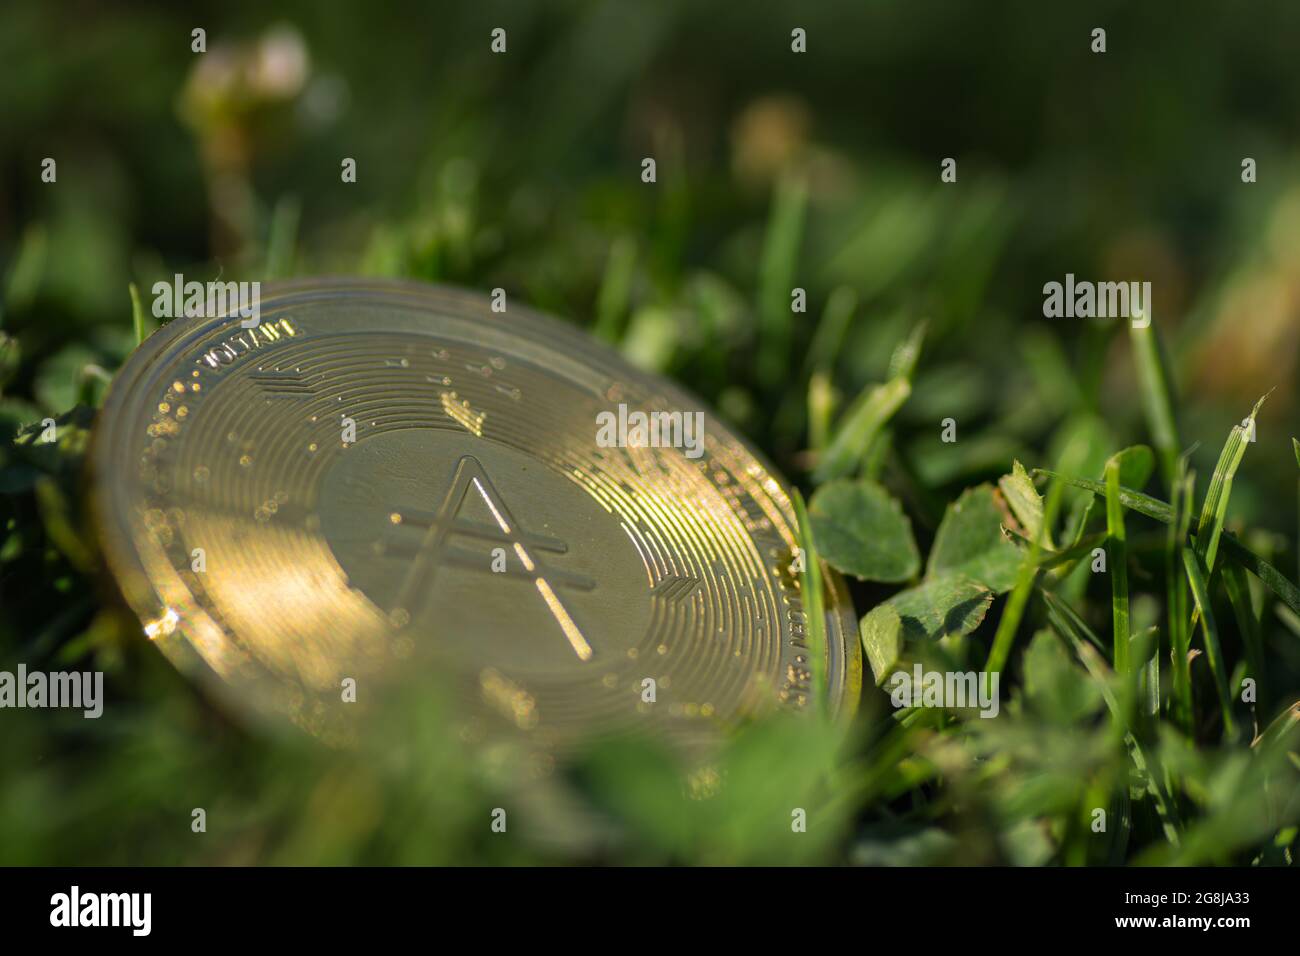 une seule pièce de monnaie ada dorée de la monnaie de cardano située dans l'herbe verte au soleil Banque D'Images